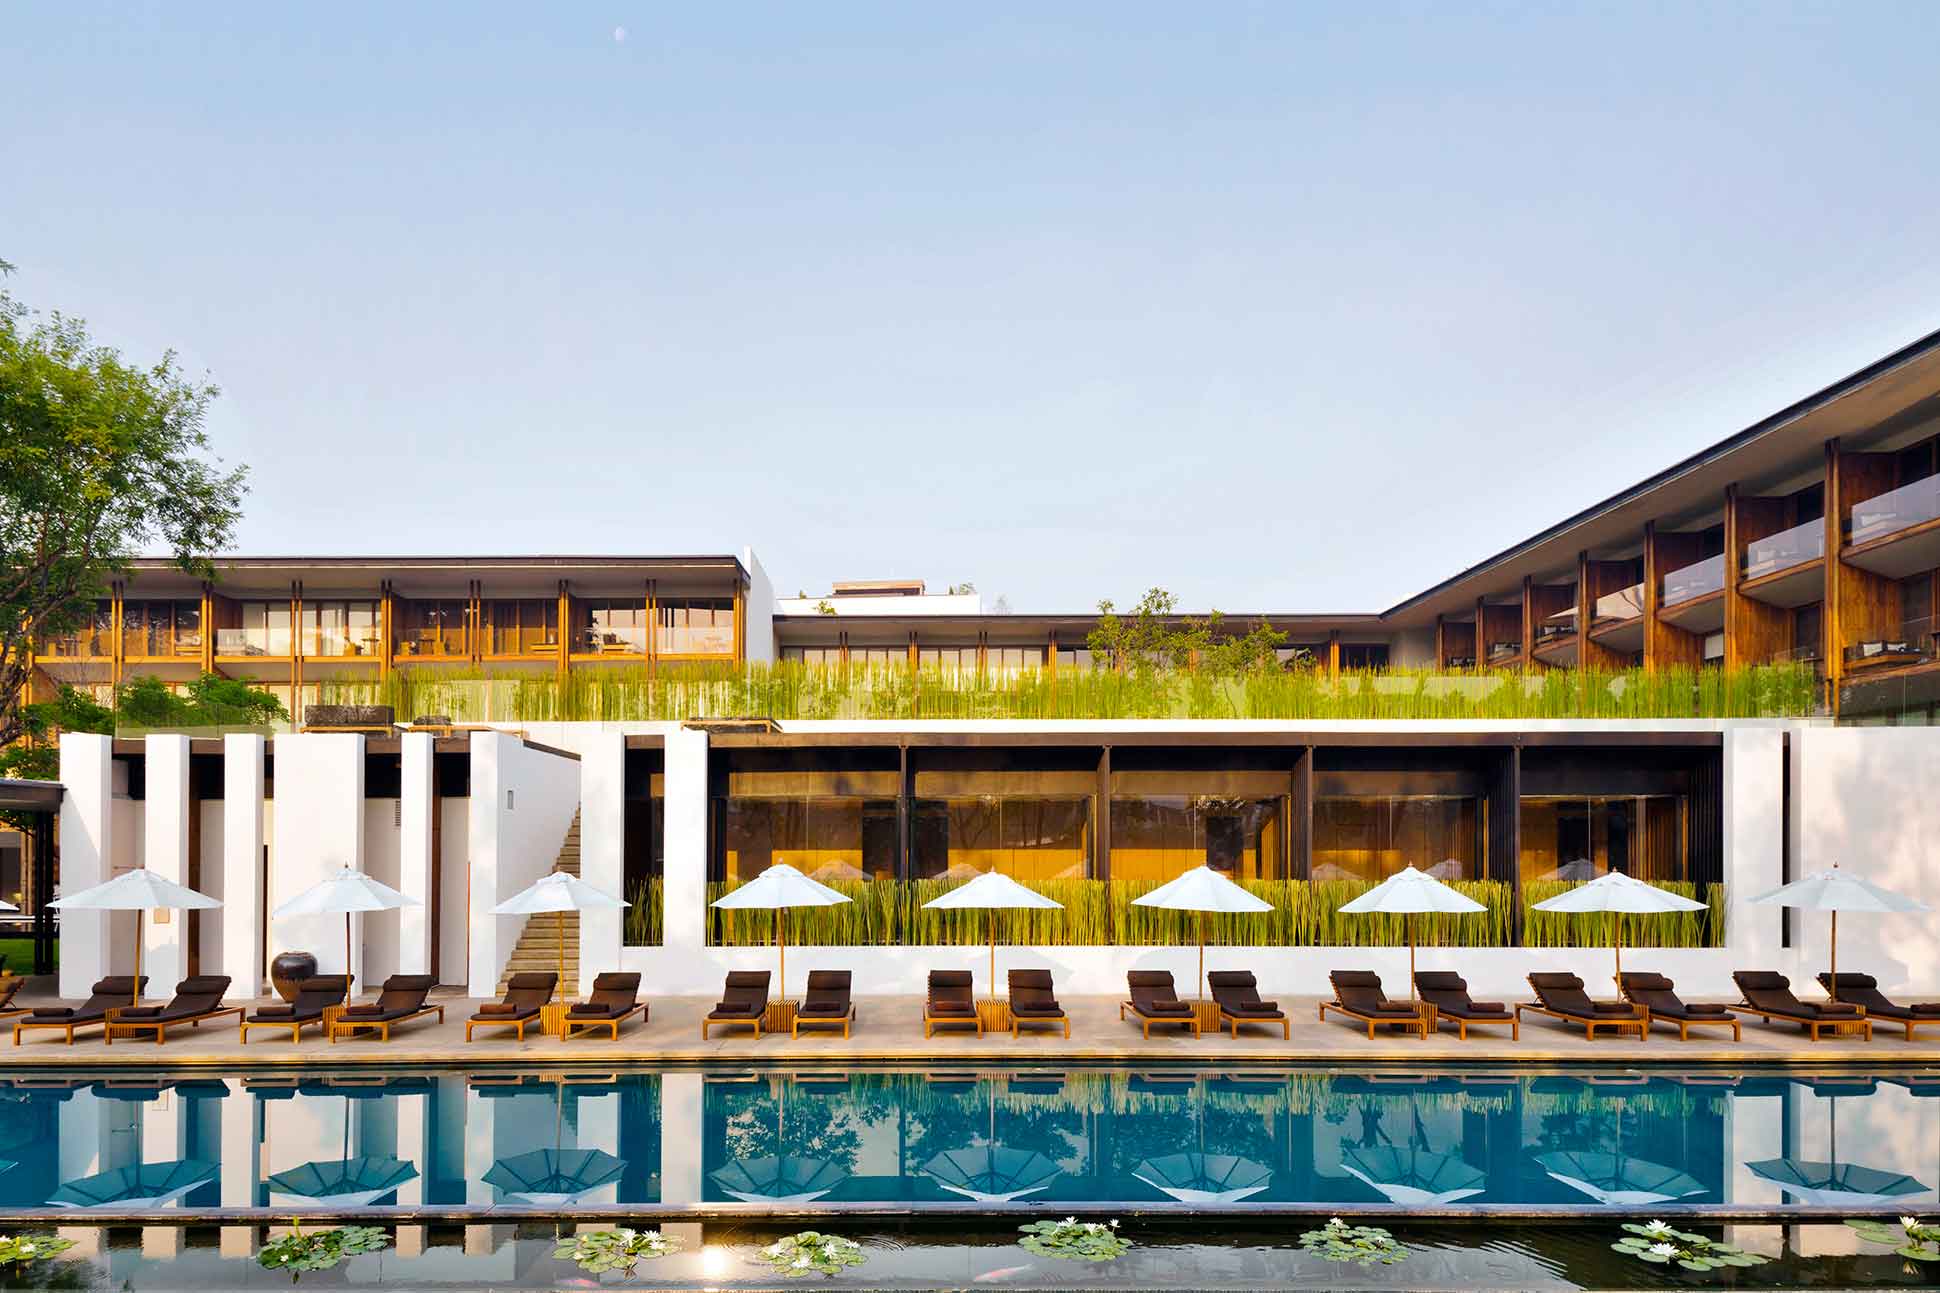 Pool at the Anantara Chiang Mai Resort, Chiang Mai, Thailand